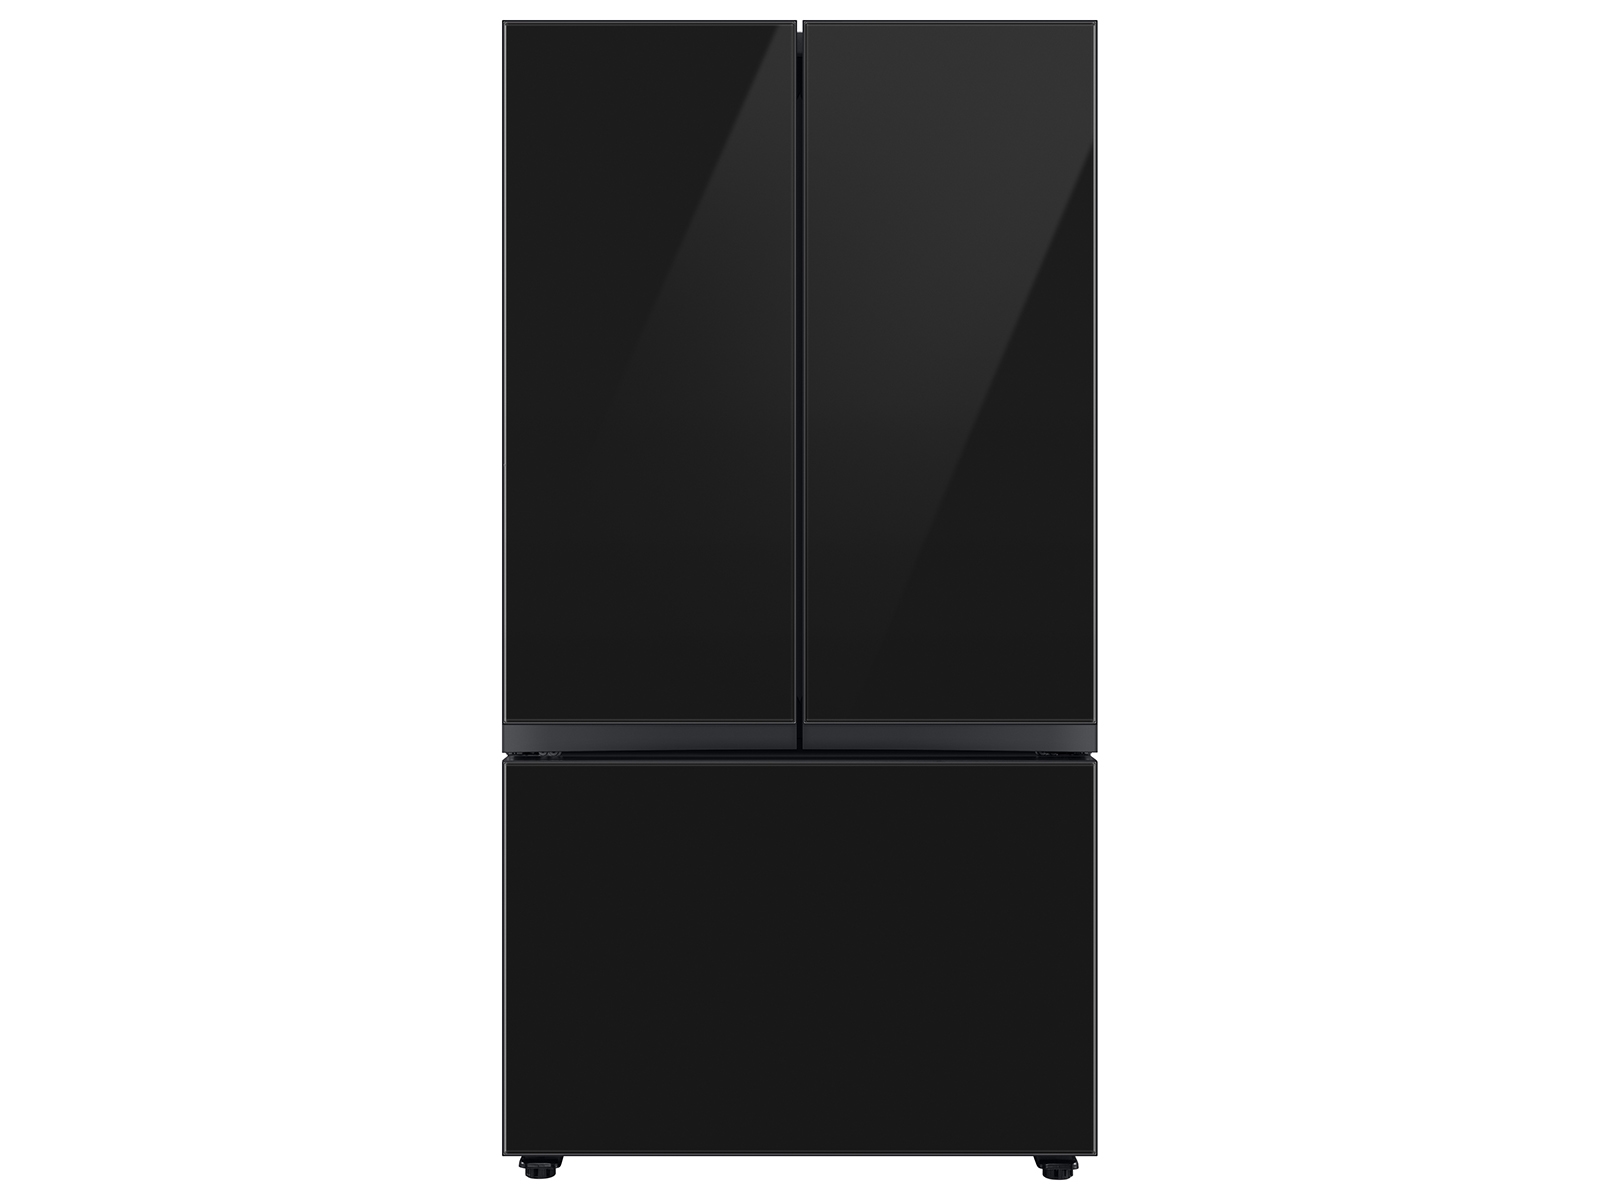 Bespoke 3-Door French Door Refrigerator (24 cu. ft.) with Beverage Center™ in Charcoal Glass